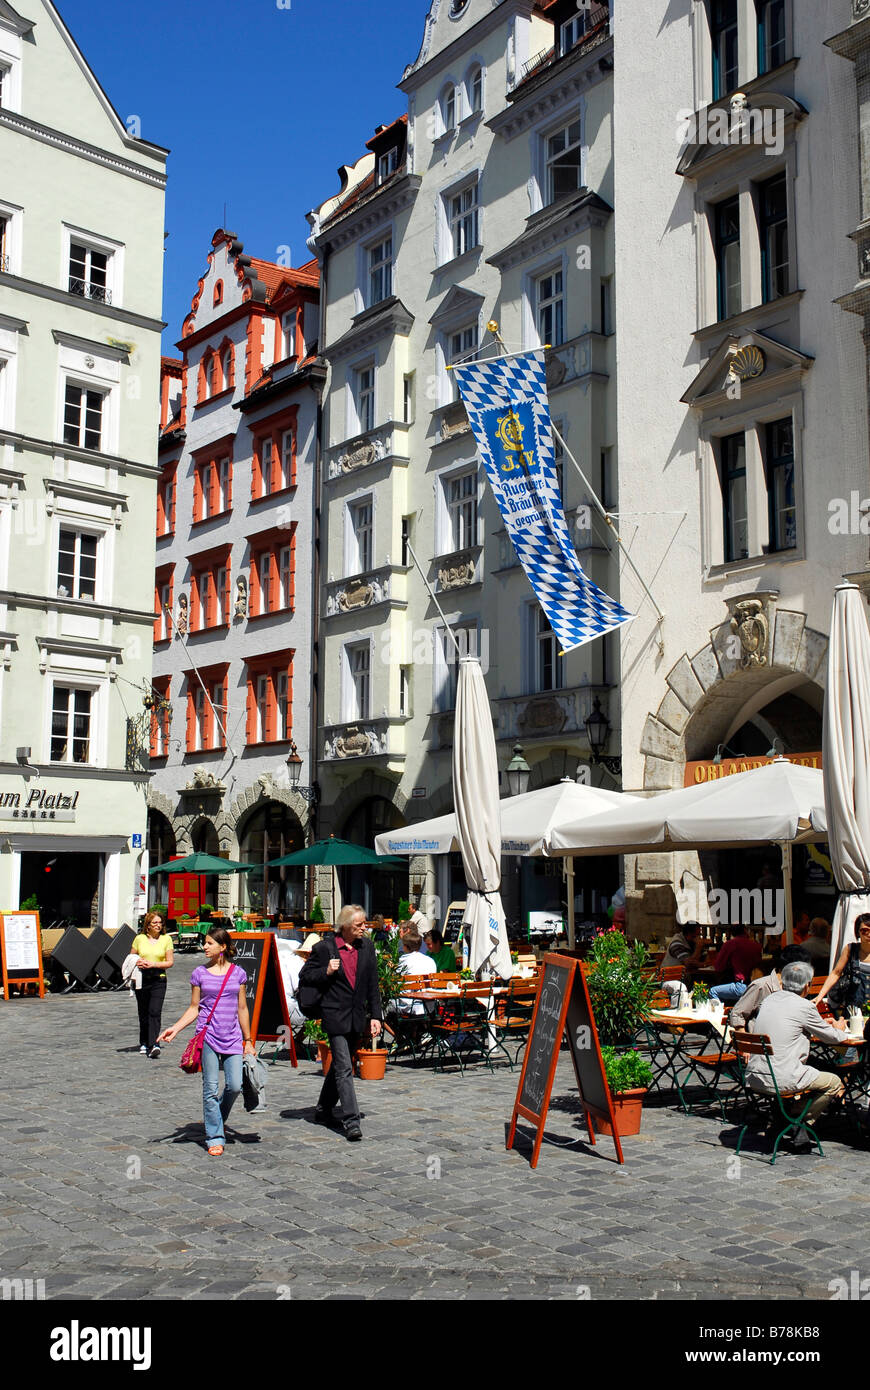 Outdoor-Tische, Fassaden, bin Platzl-Platz, Altstadt, München, Oberbayern, Deutschland, Europa Stockfoto